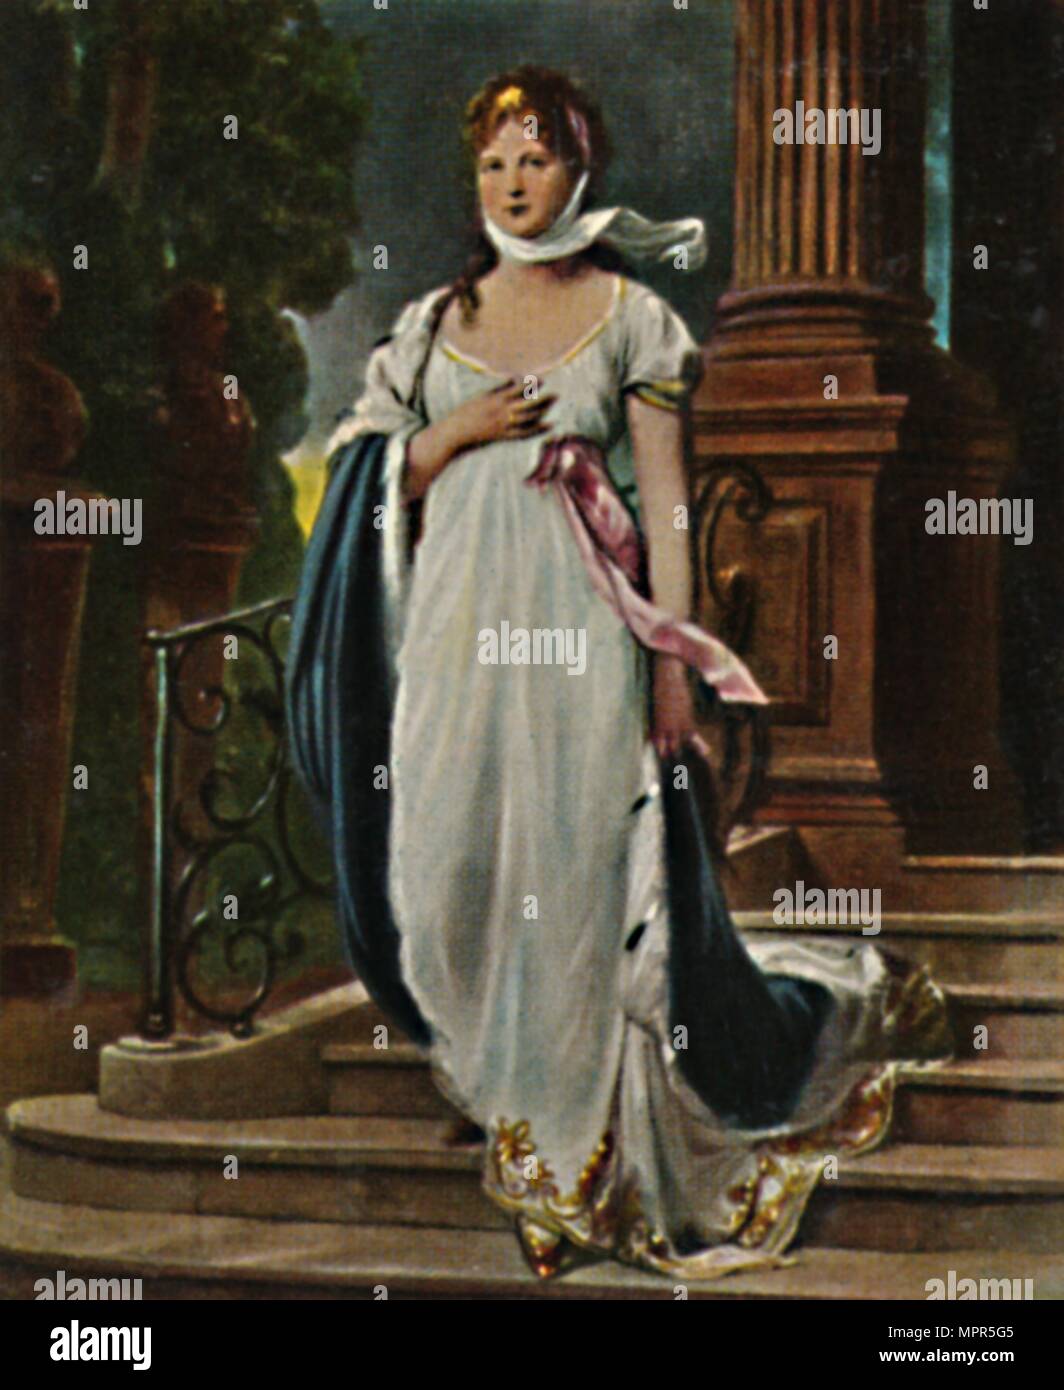 'Königin Luise 1776-1810. - Gemälde von Gustao Richter', 1934. Artist: Unknown. Stock Photo